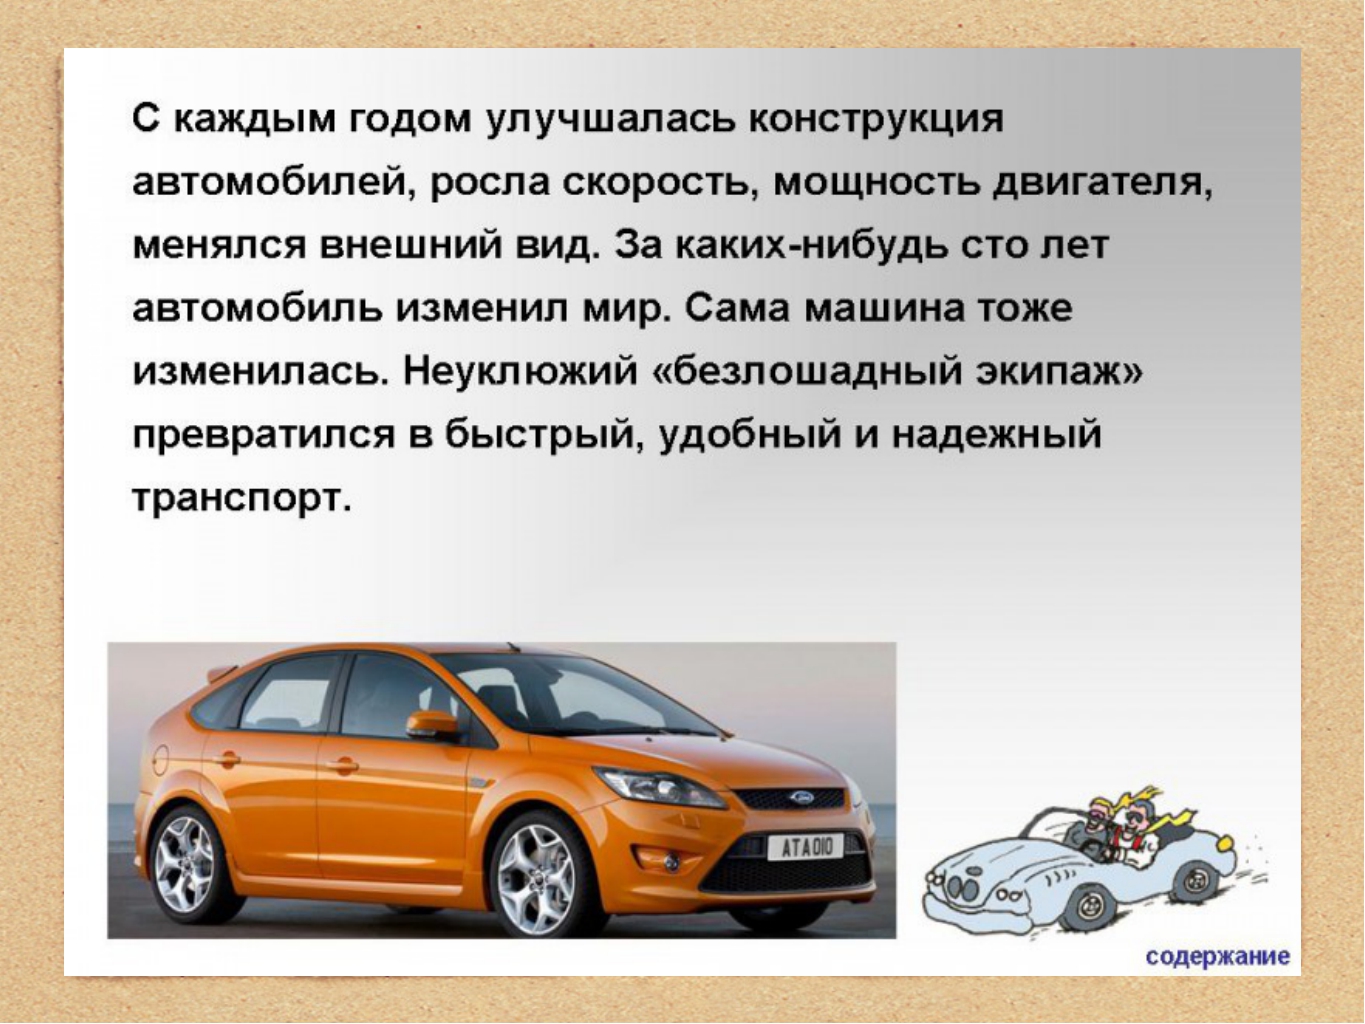 Зачем нужны автомобили презентация 1. Описание автомобиля. Презентация на тему машины. Машина для презентации. Доклад про автомобиль.